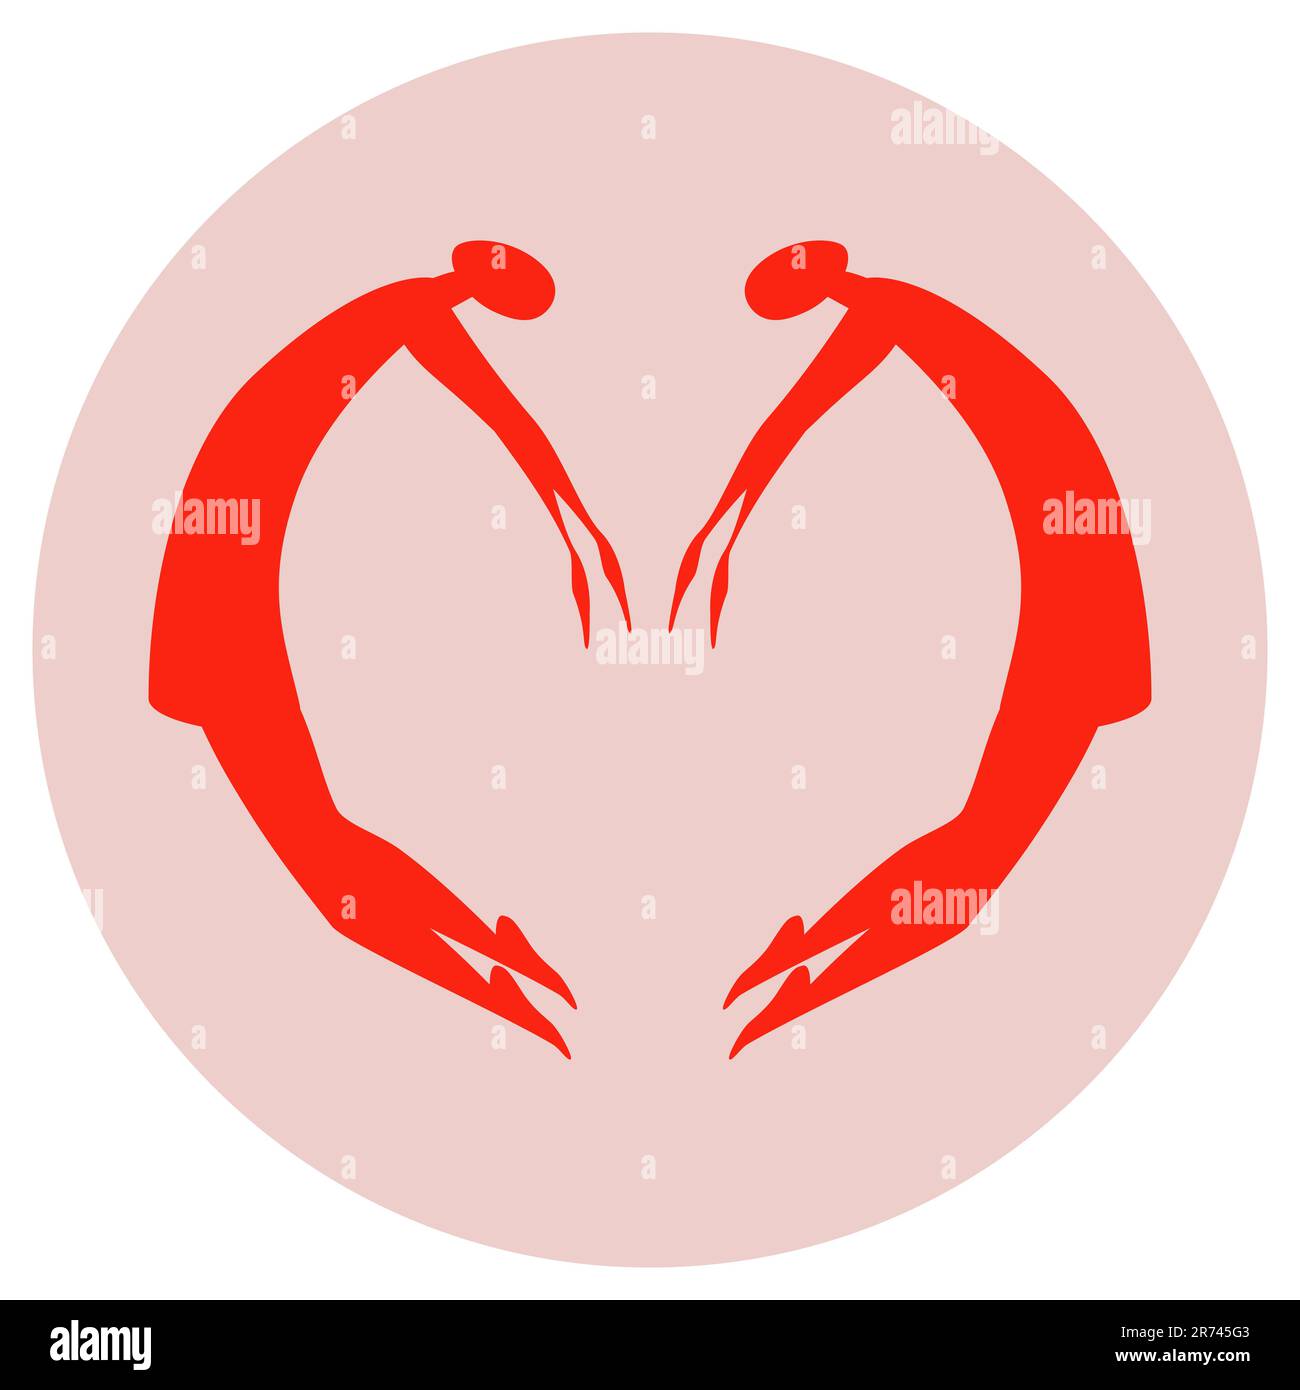 Les couples sautent et forment des formes de coeur avec leur corps. La silhouette rouge des femmes sur un fond rose circulaire. J'adore l'illustration du vecteur de symbole. Isolé Illustration de Vecteur